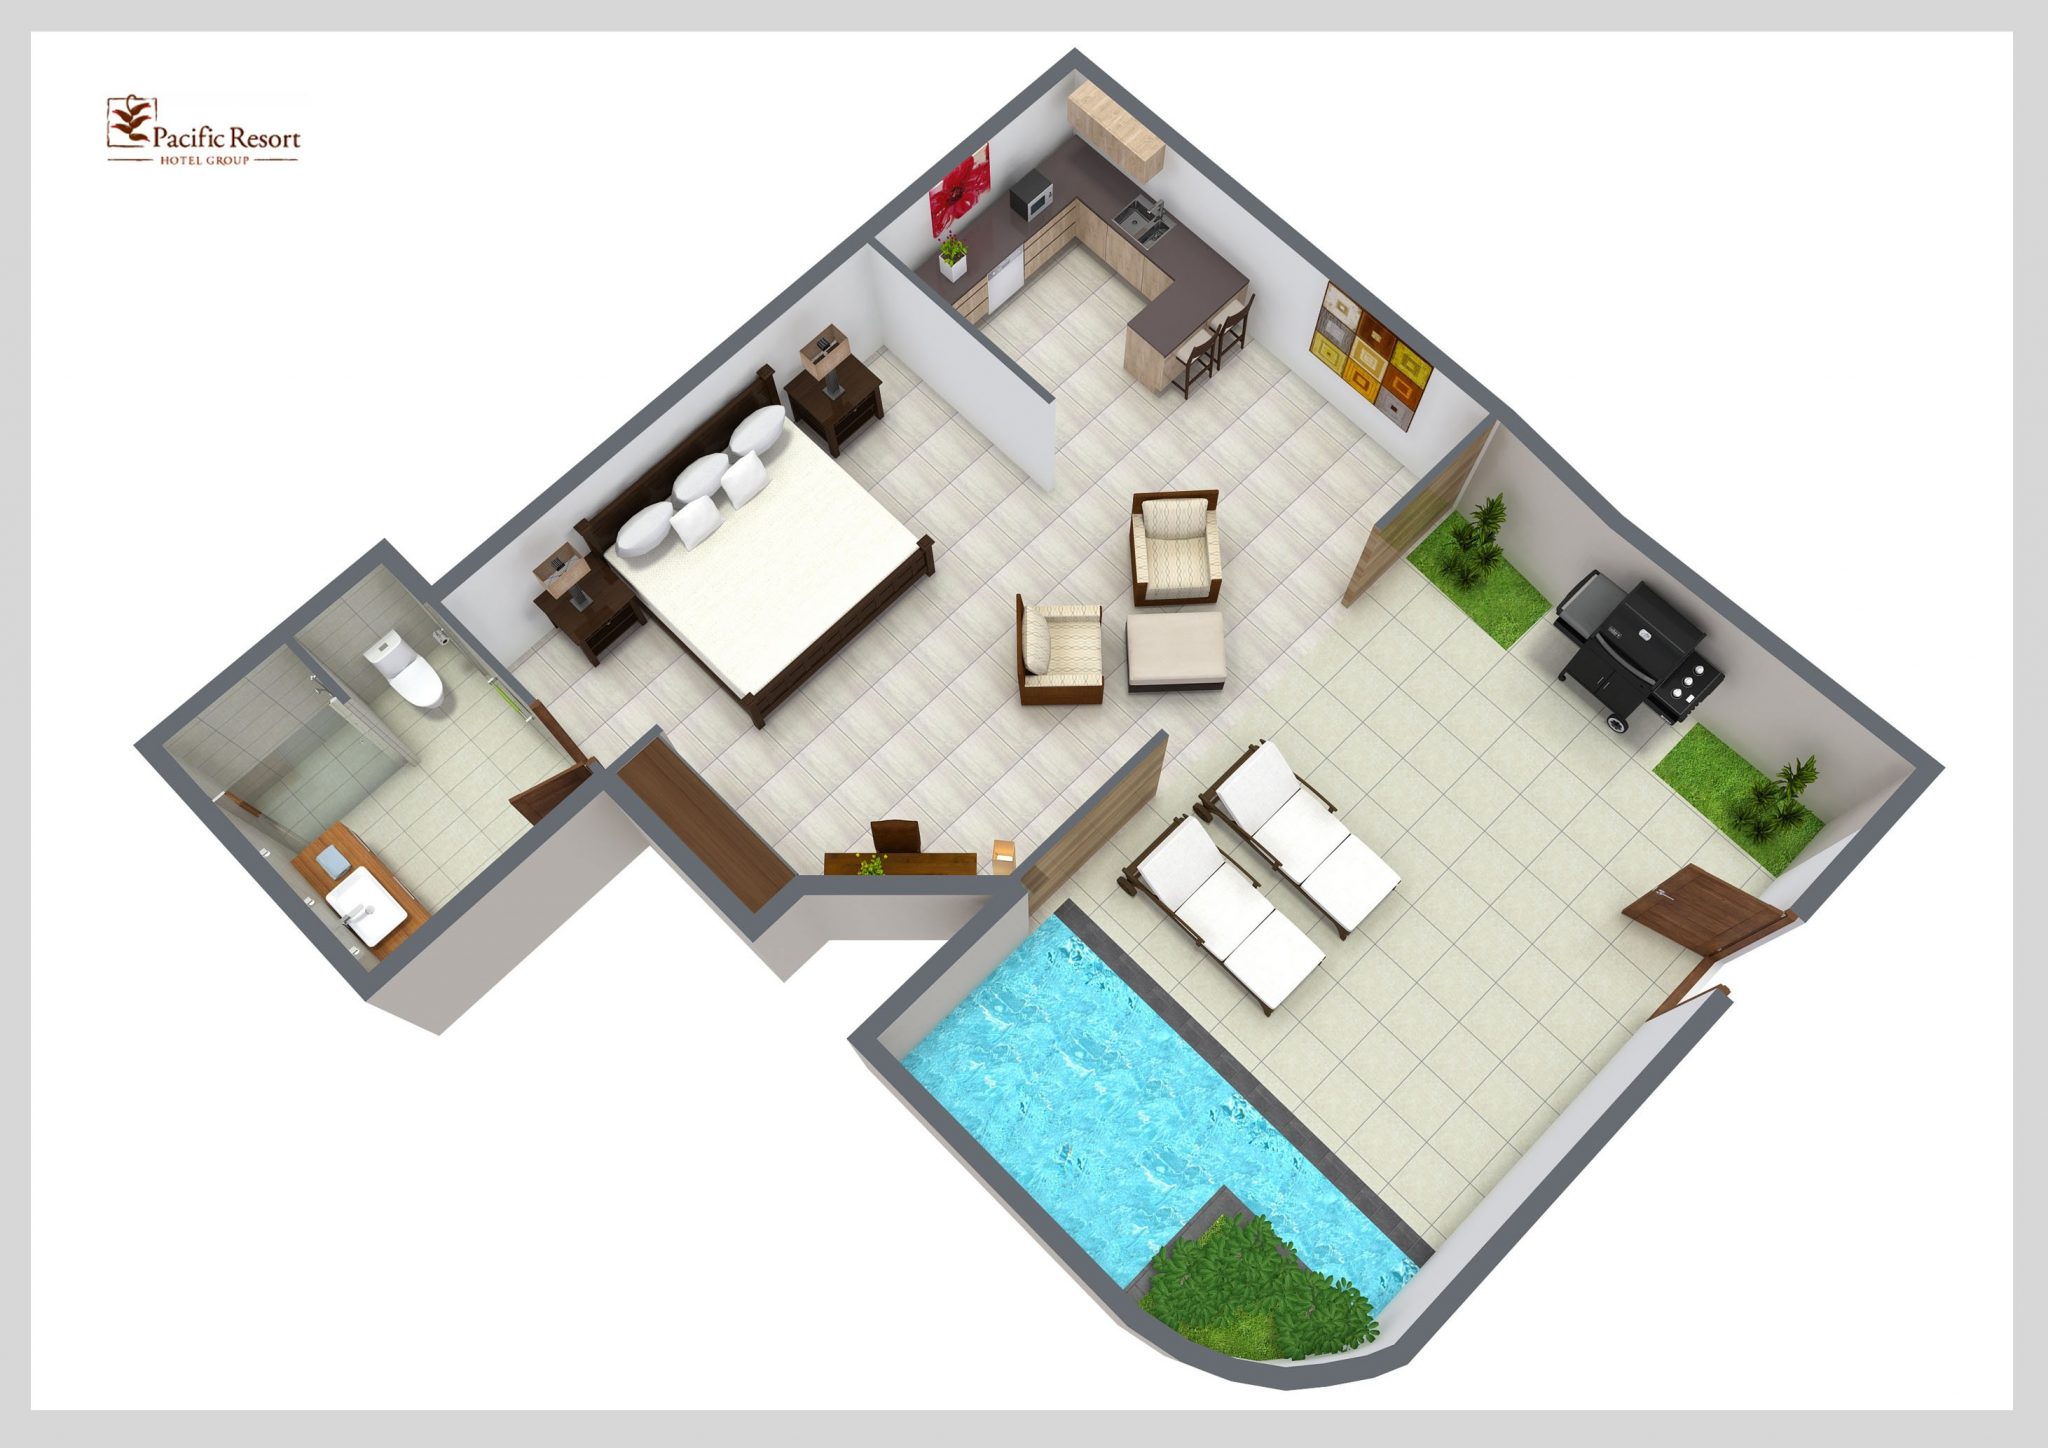 Pool Villa Suite - Room Plan